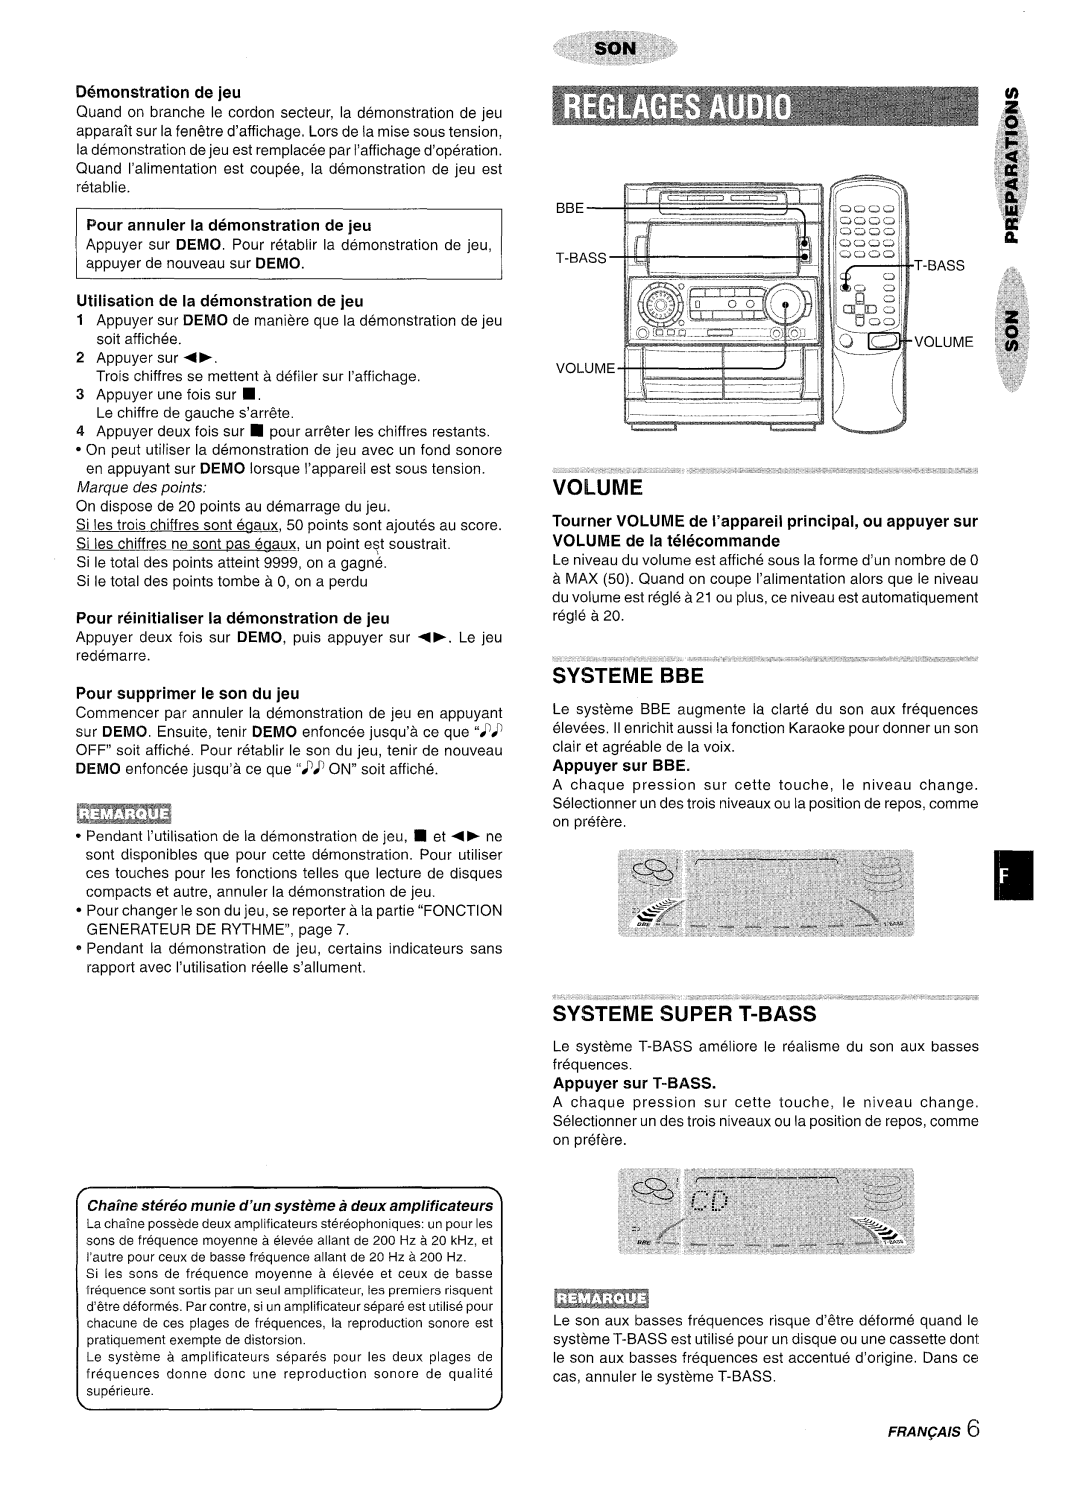 Aiwa NSX-A909 manual Demonstration de jeu, Pour annuler la demonstration de jeu, Utilisation de la demonstration de jeu 